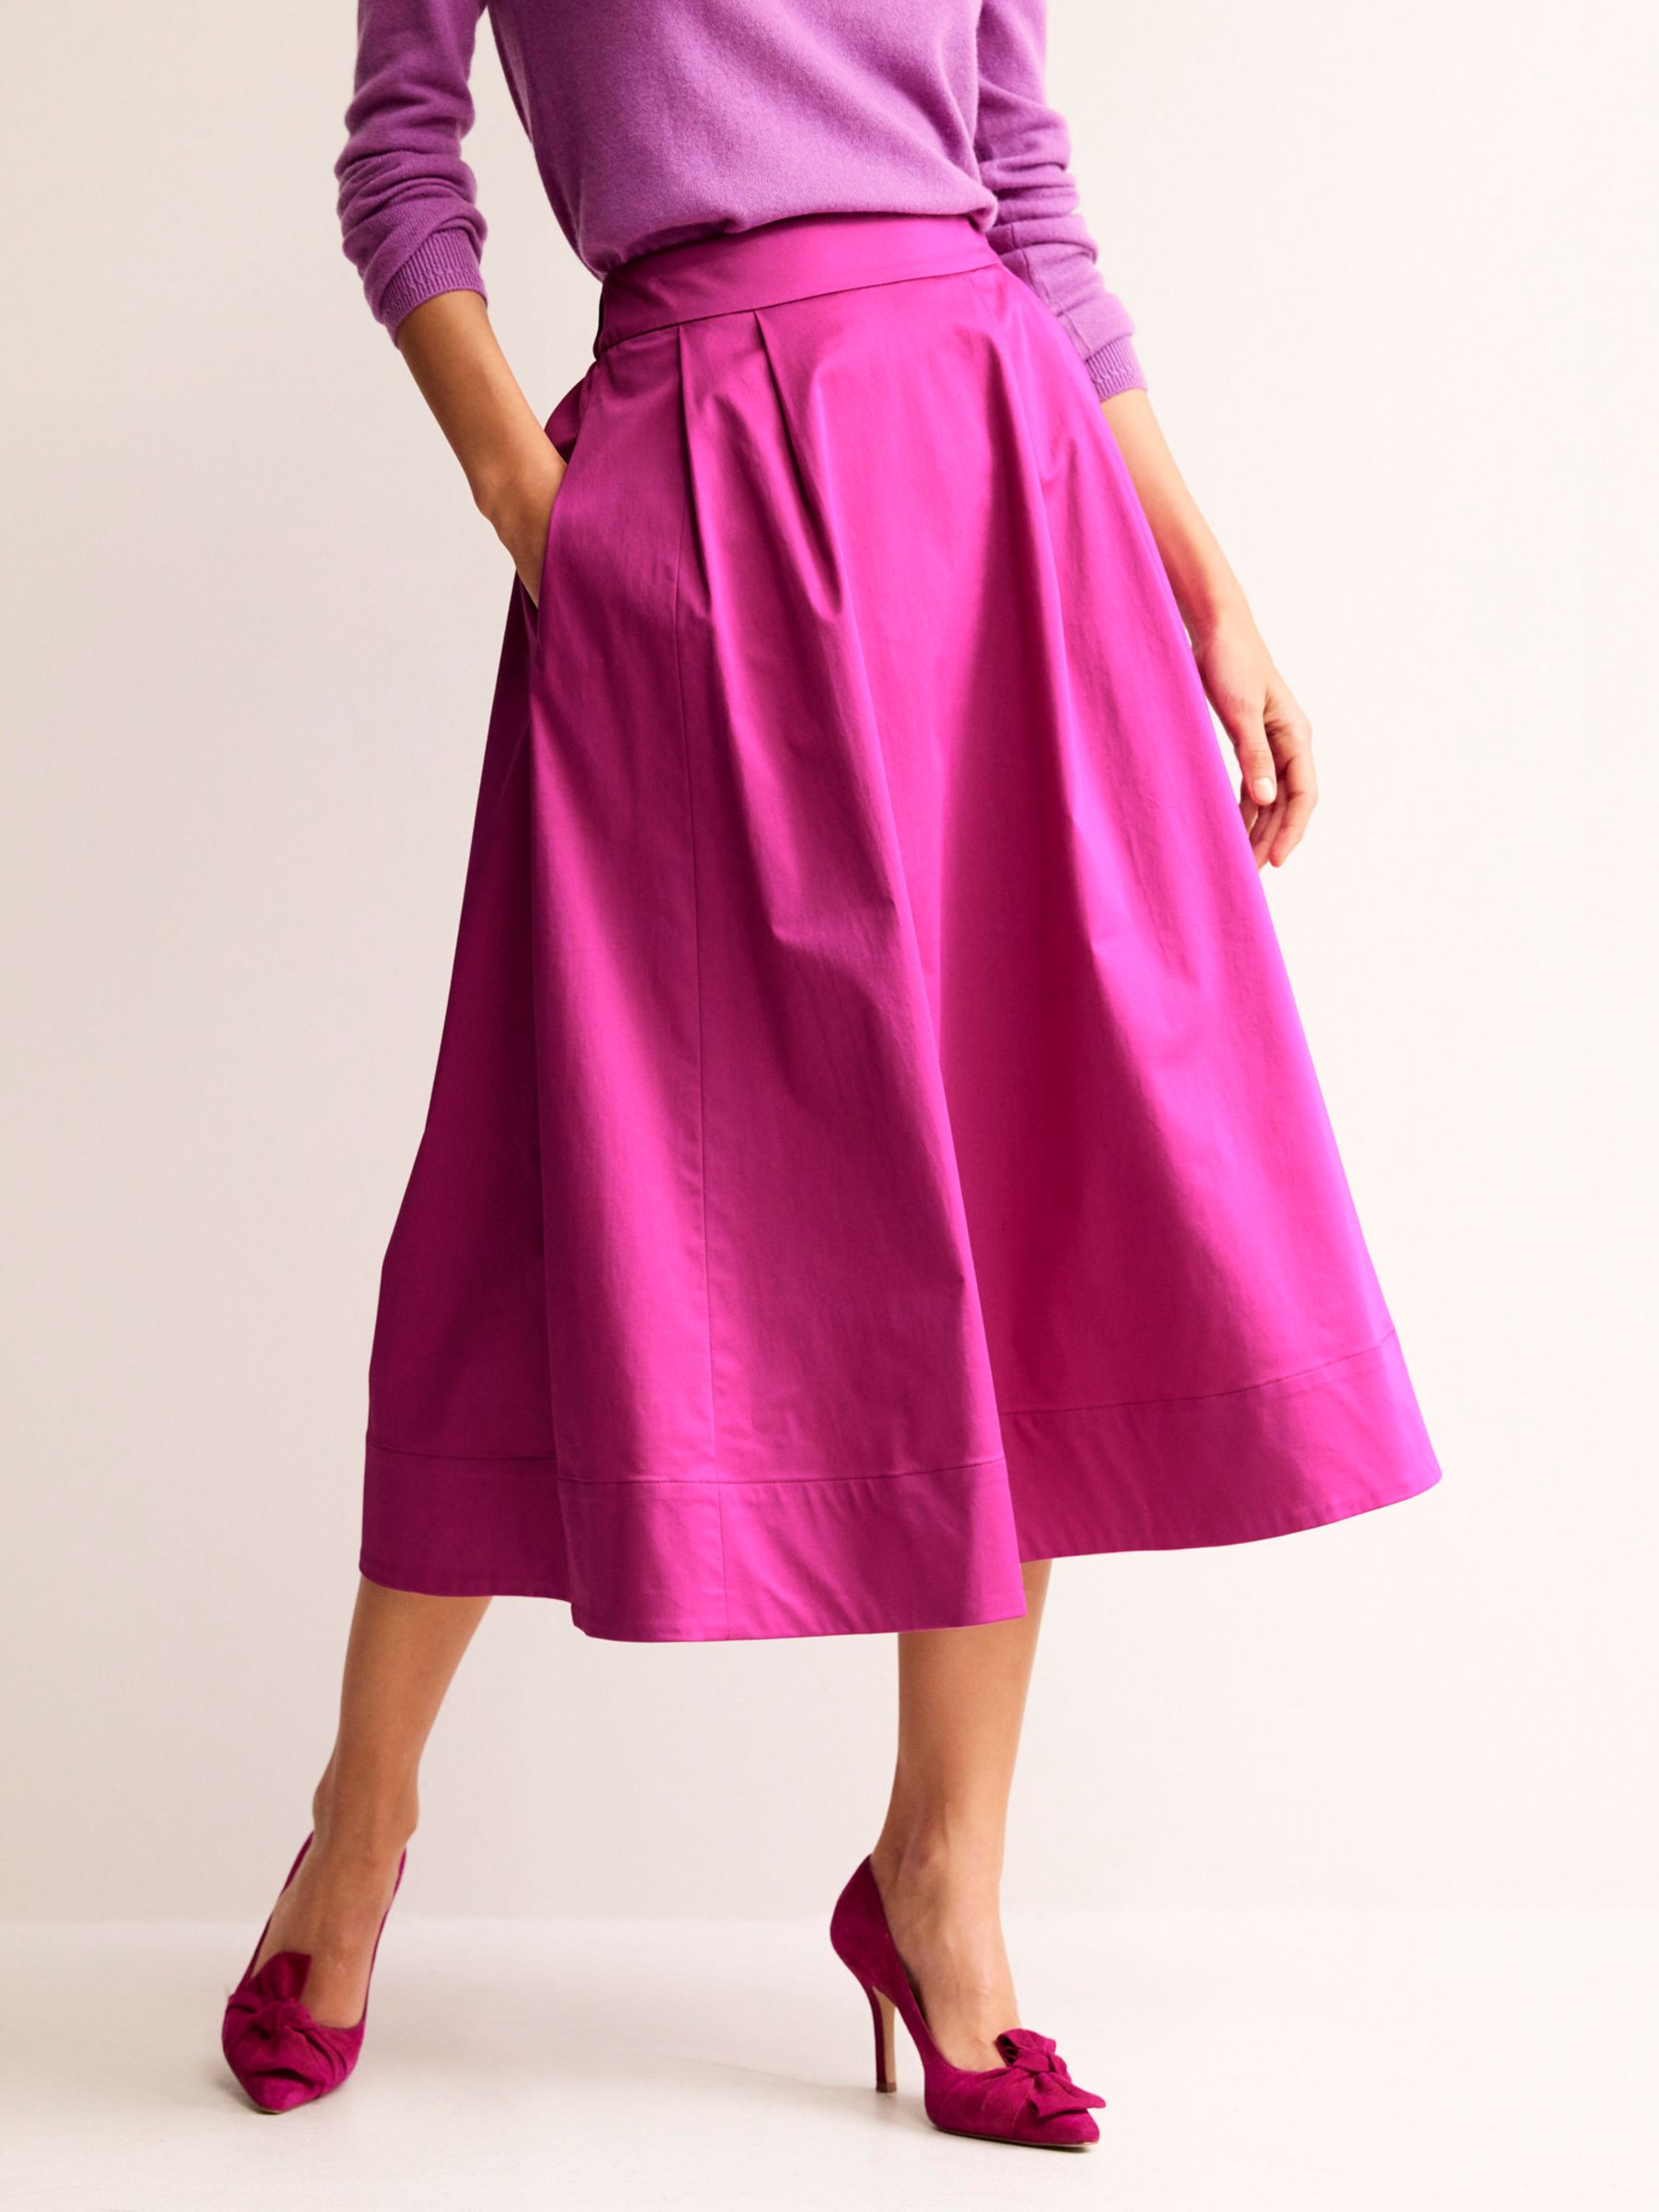 Buy Boden Isabella Satin Skirt, Rose Violet Online at johnlewis.com